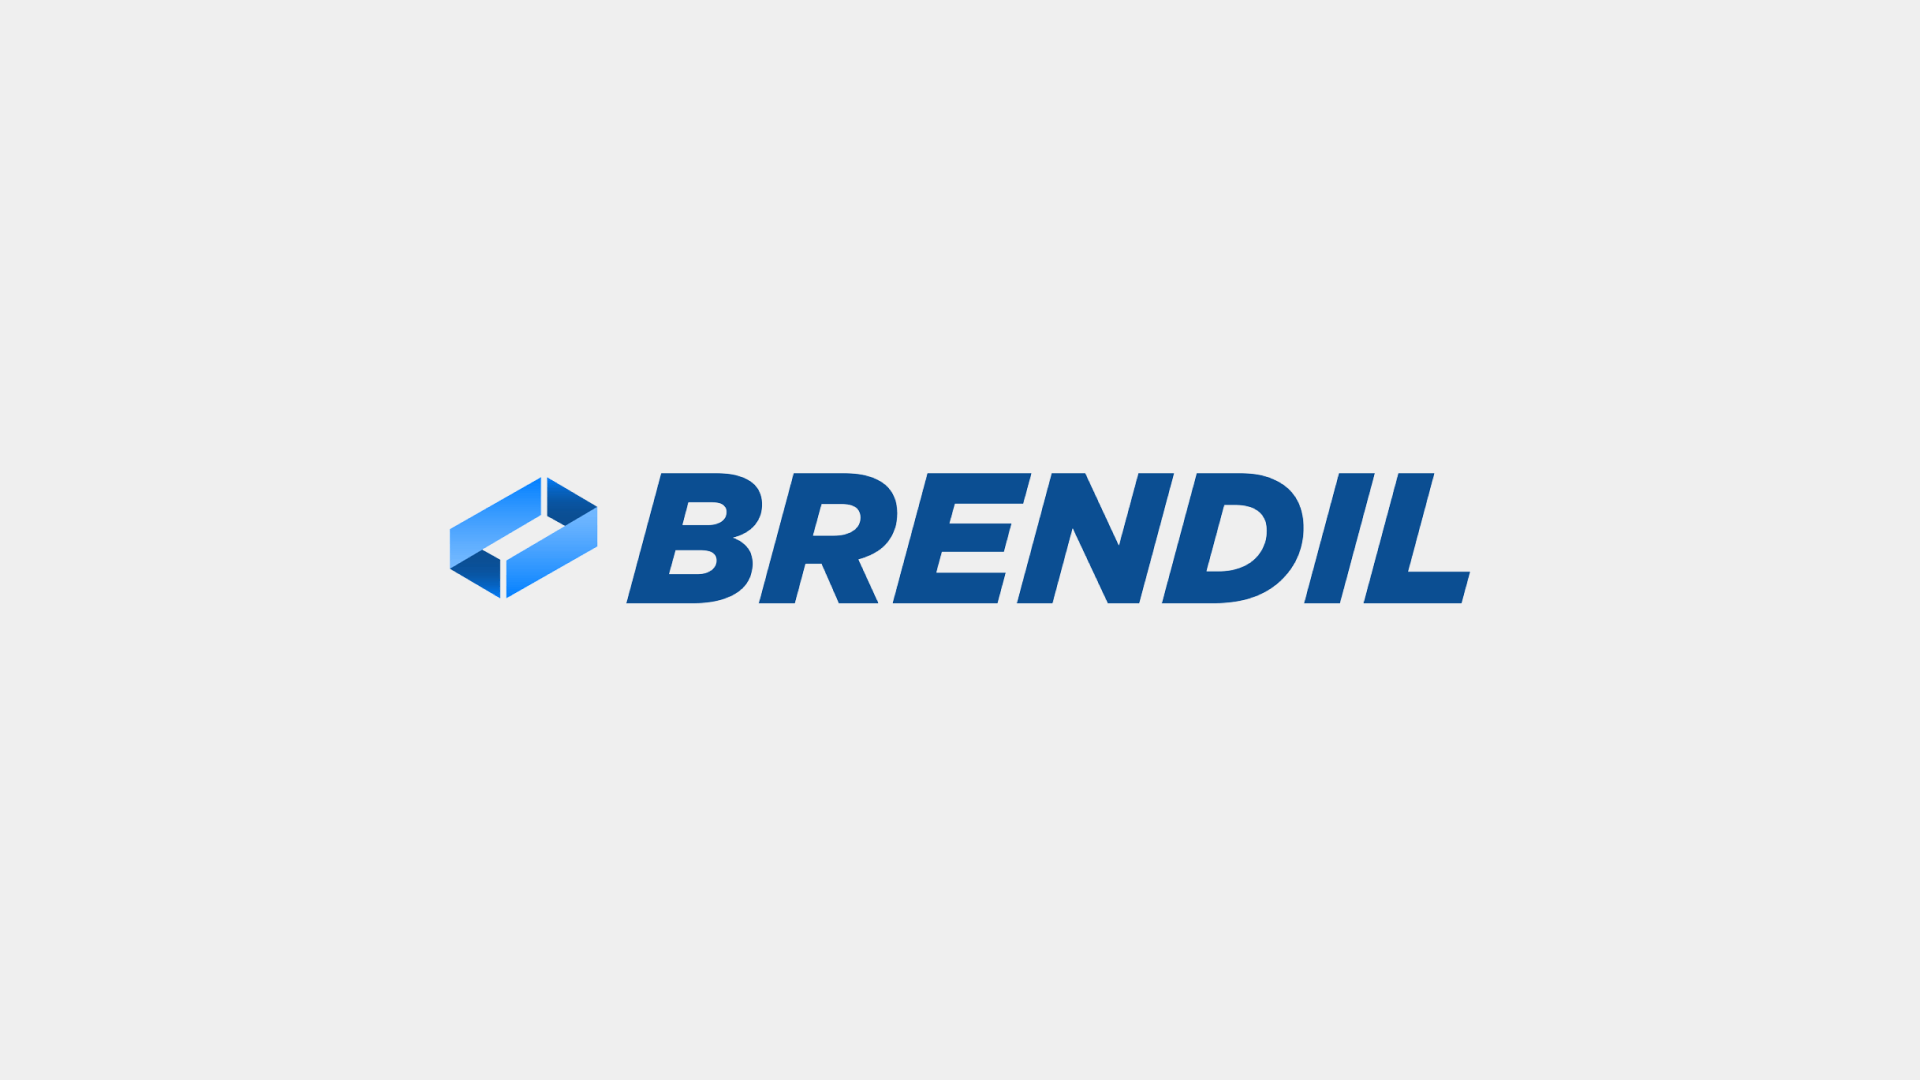 Brendil Minit Partnership